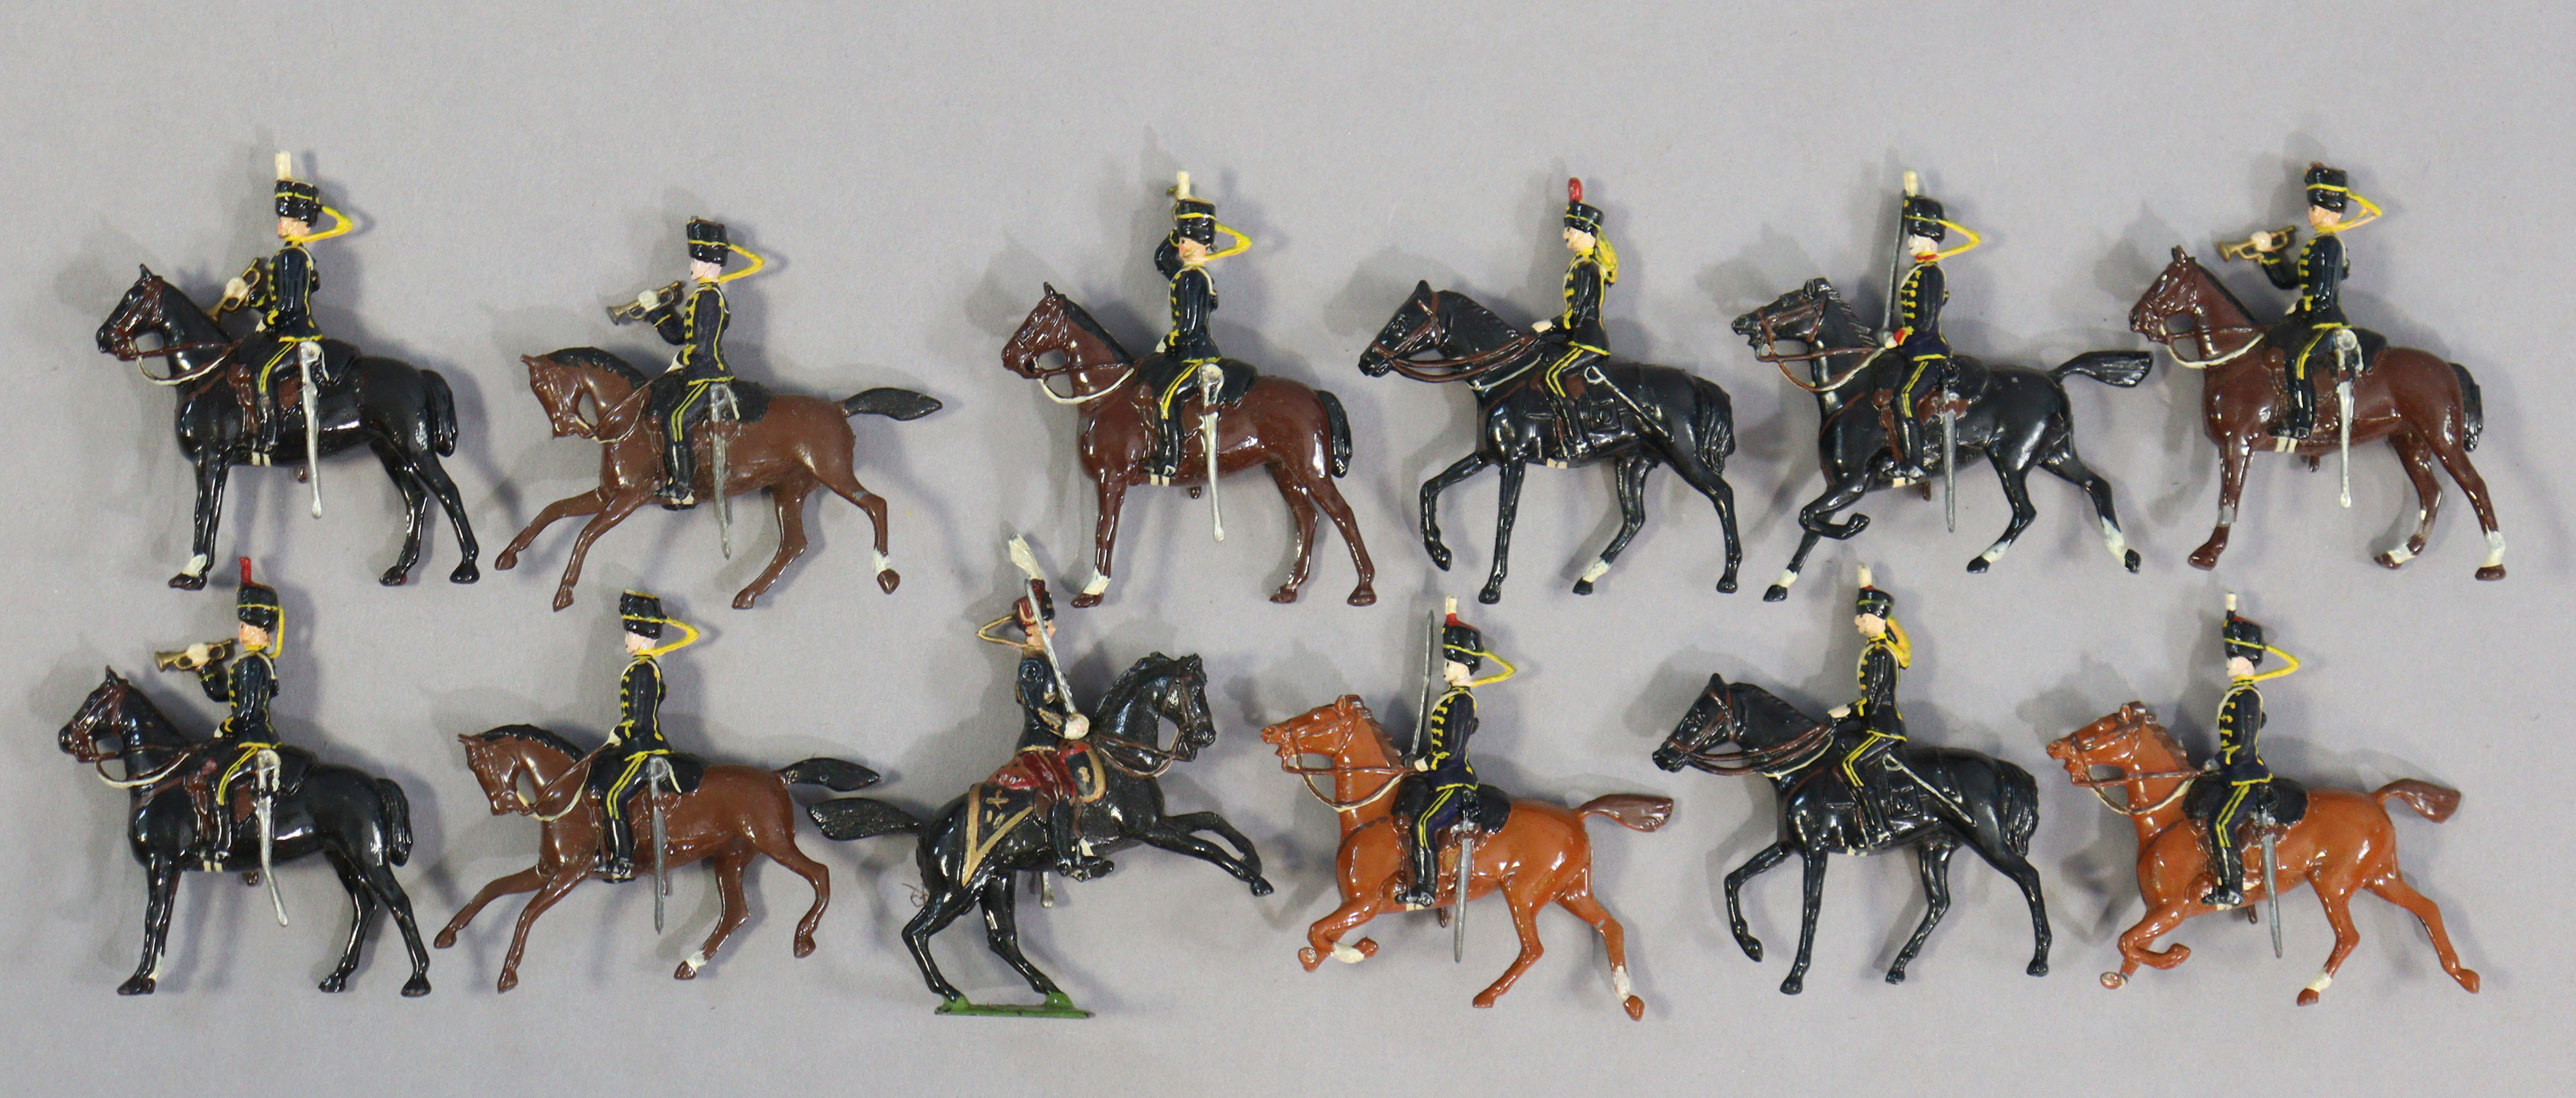 Twelve Britain’s painted lead equestrian soldier figures.